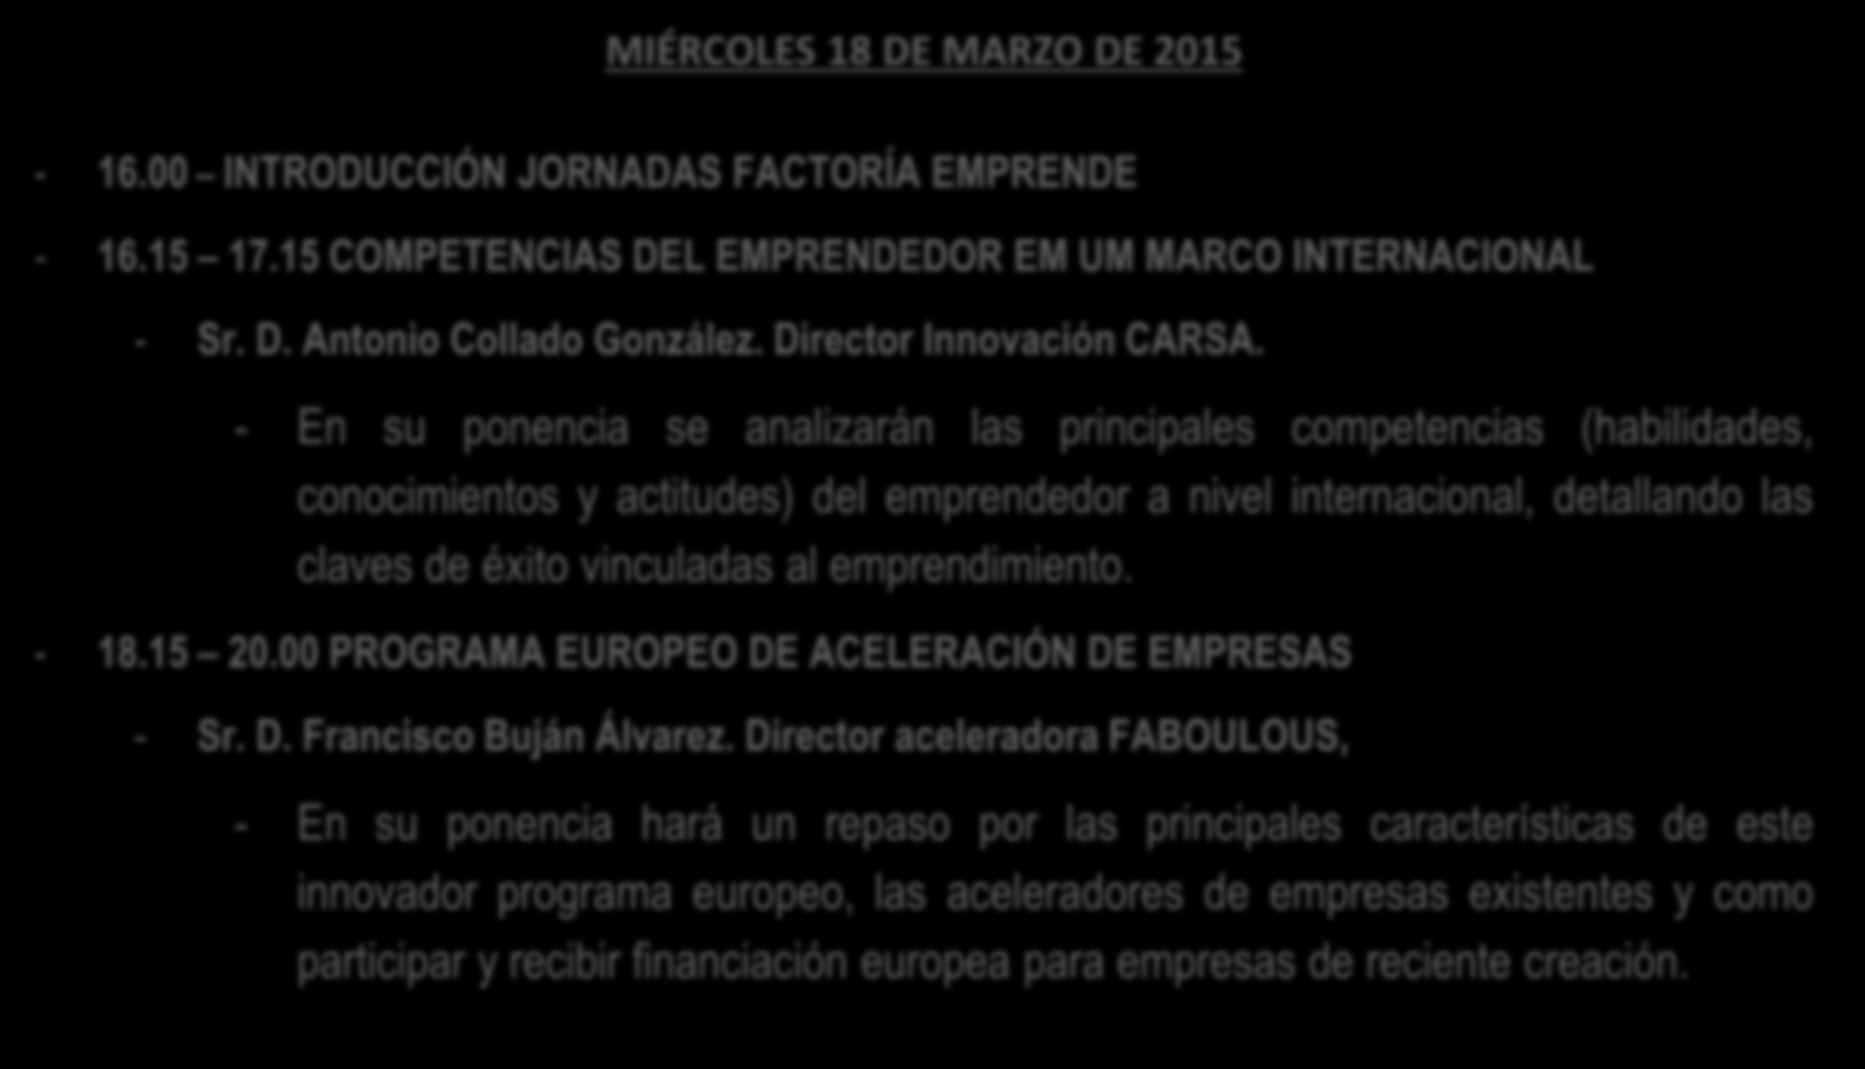 MIÉRCOLES 18 DE MARZO DE 2015-16.00 INTRODUCCIÓN JORNADAS FACTORÍA EMPRENDE - 16.15 17.15 COMPETENCIAS DEL EMPRENDEDOR EM UM MARCO INTERNACIONAL - Sr. D. Antonio Collado González.